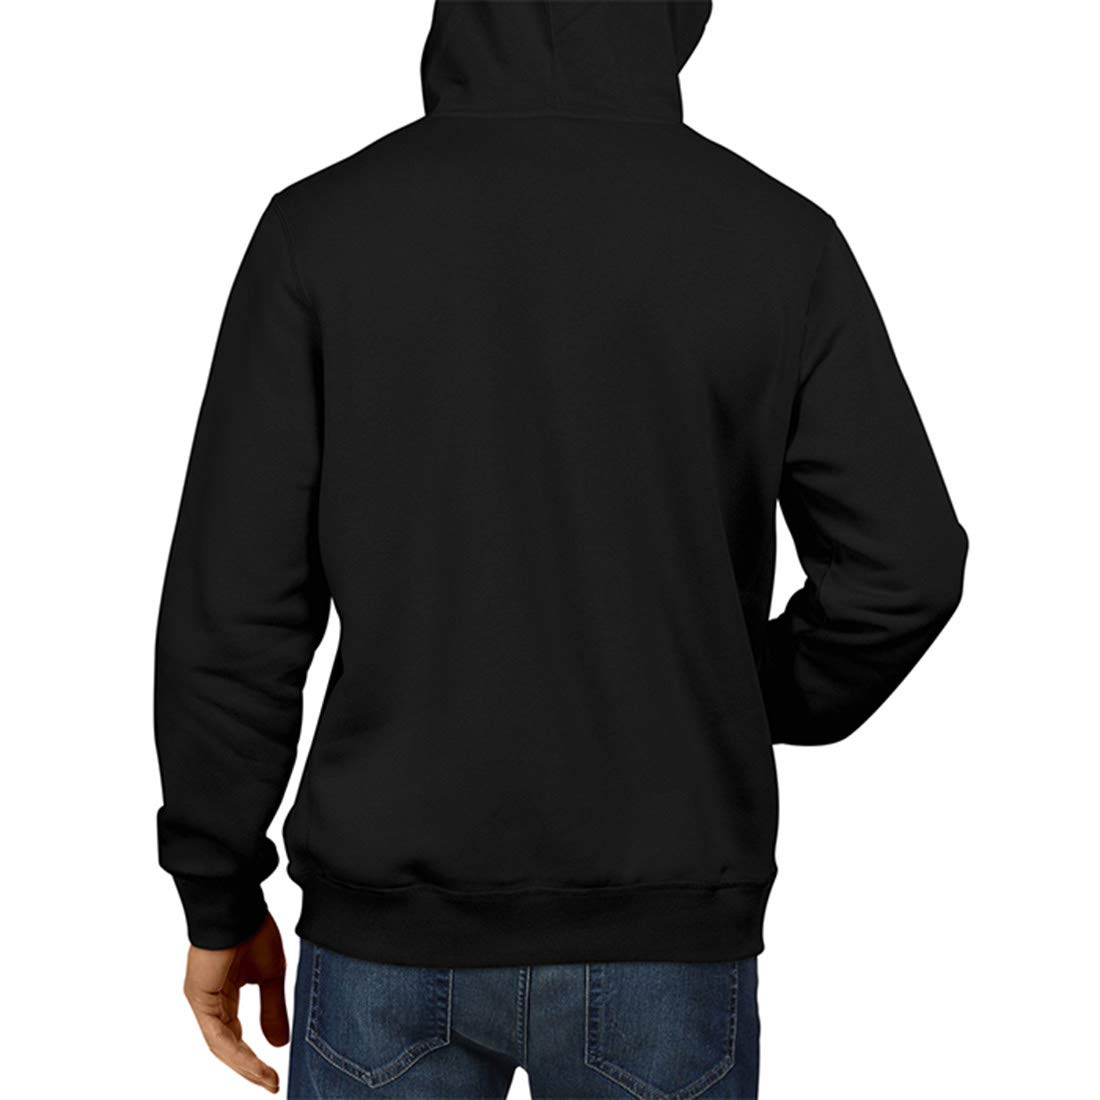 PUBG Winner Chicken Dinner Ninety Nine Black Gaming Hoodie | Gameing Unisex Sweatshirt  Jacket 100% Cotton Hoodie (Black)